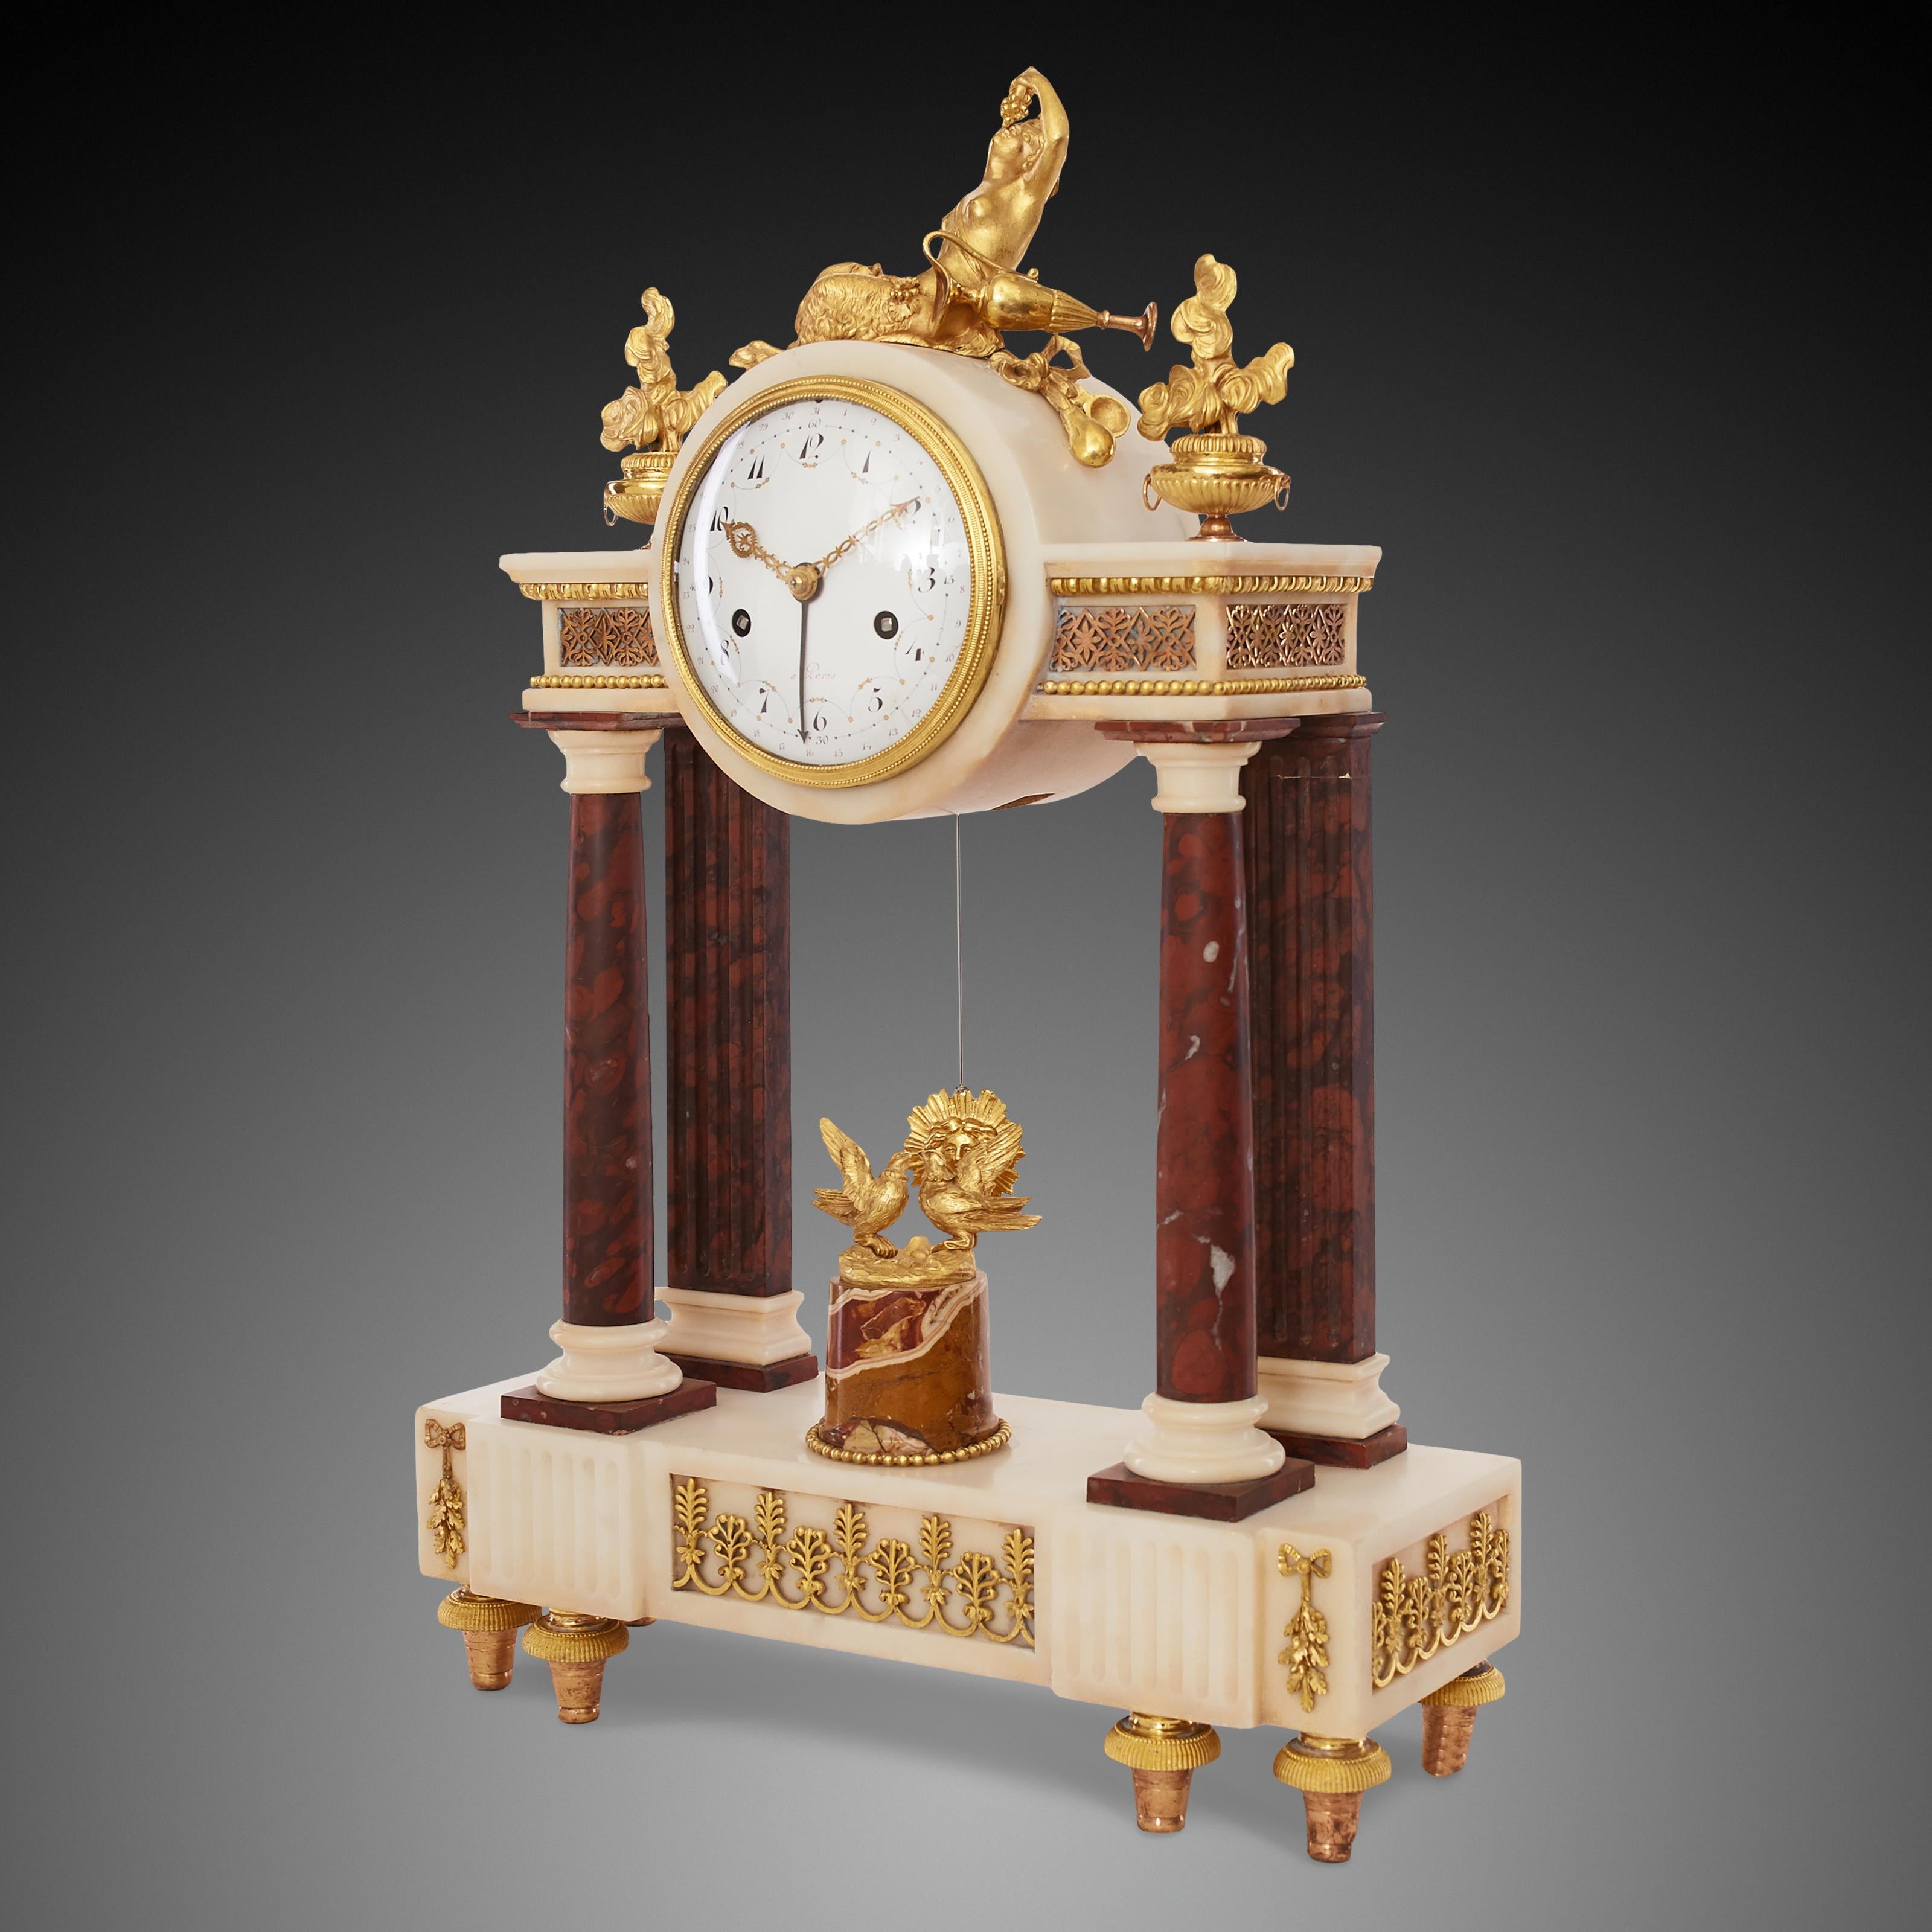 Marbre blanc de haute qualité de style Louis XV français L'horloge est maintenue entre deux colonnes de marbre entre lesquelles on peut voir deux pigeons et un soleil désolé. Au sommet, il y a la figure d'un faune mangeant des raisins avec un